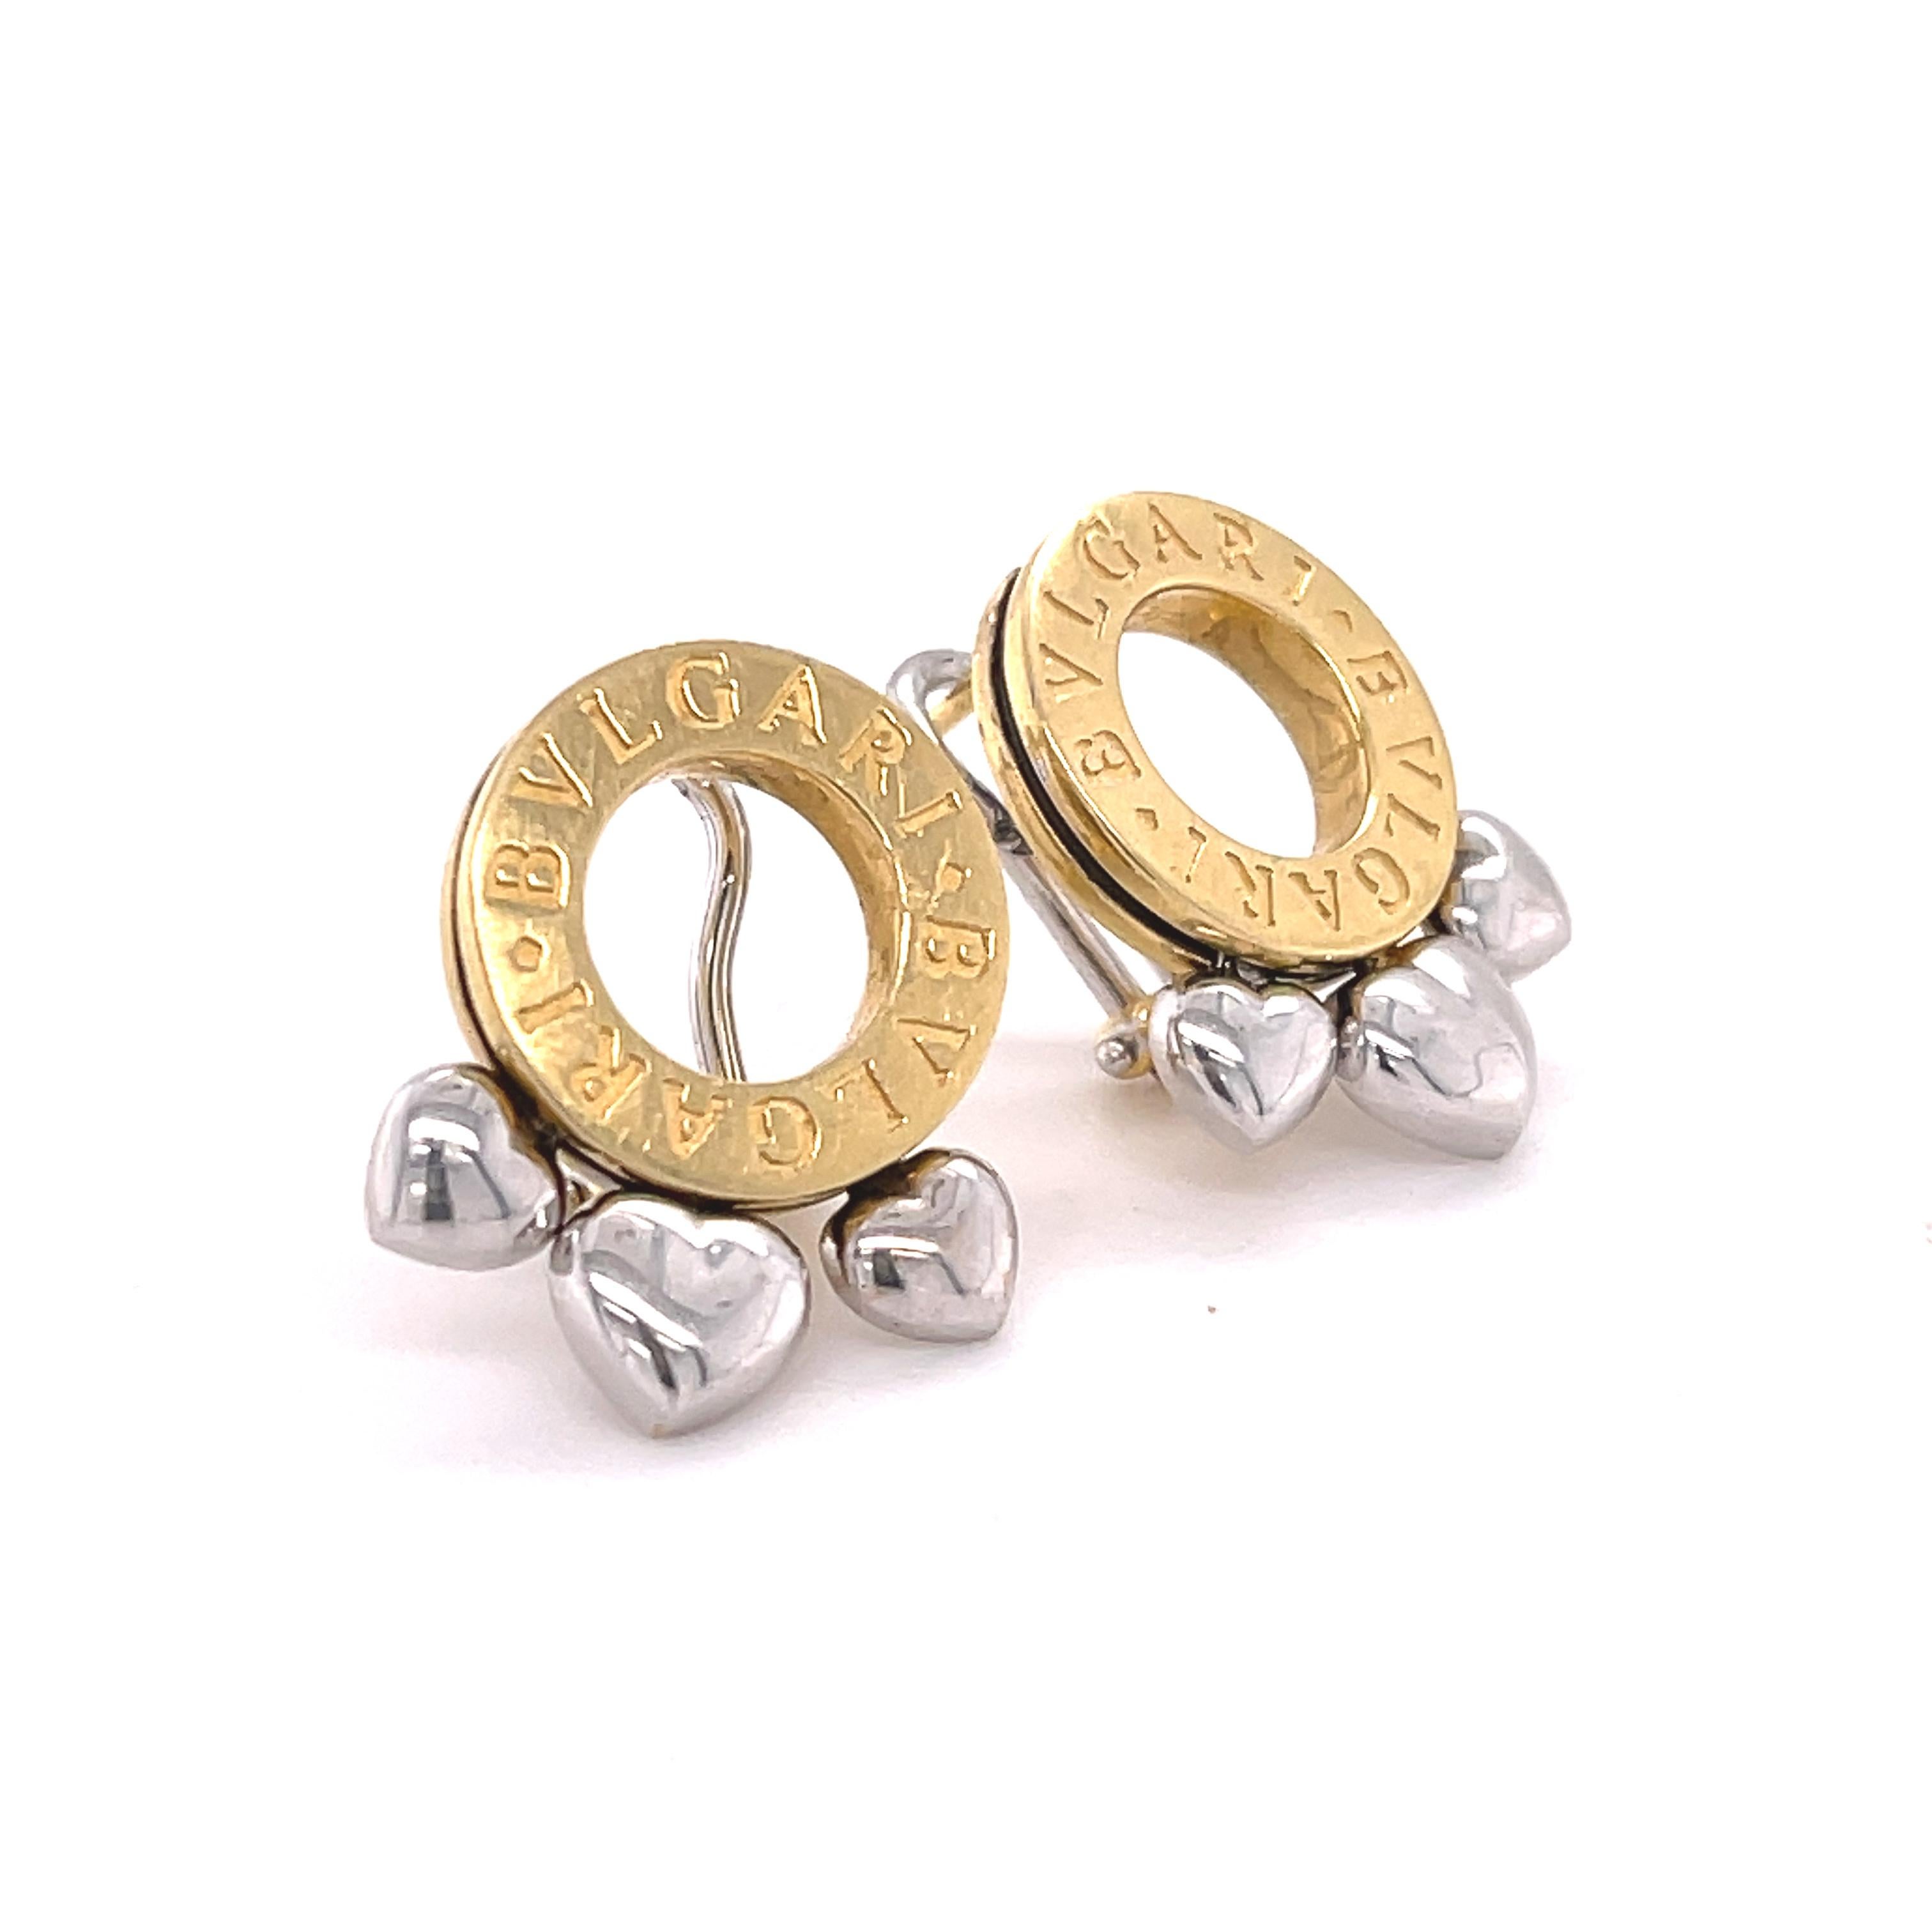 unique gold earrings